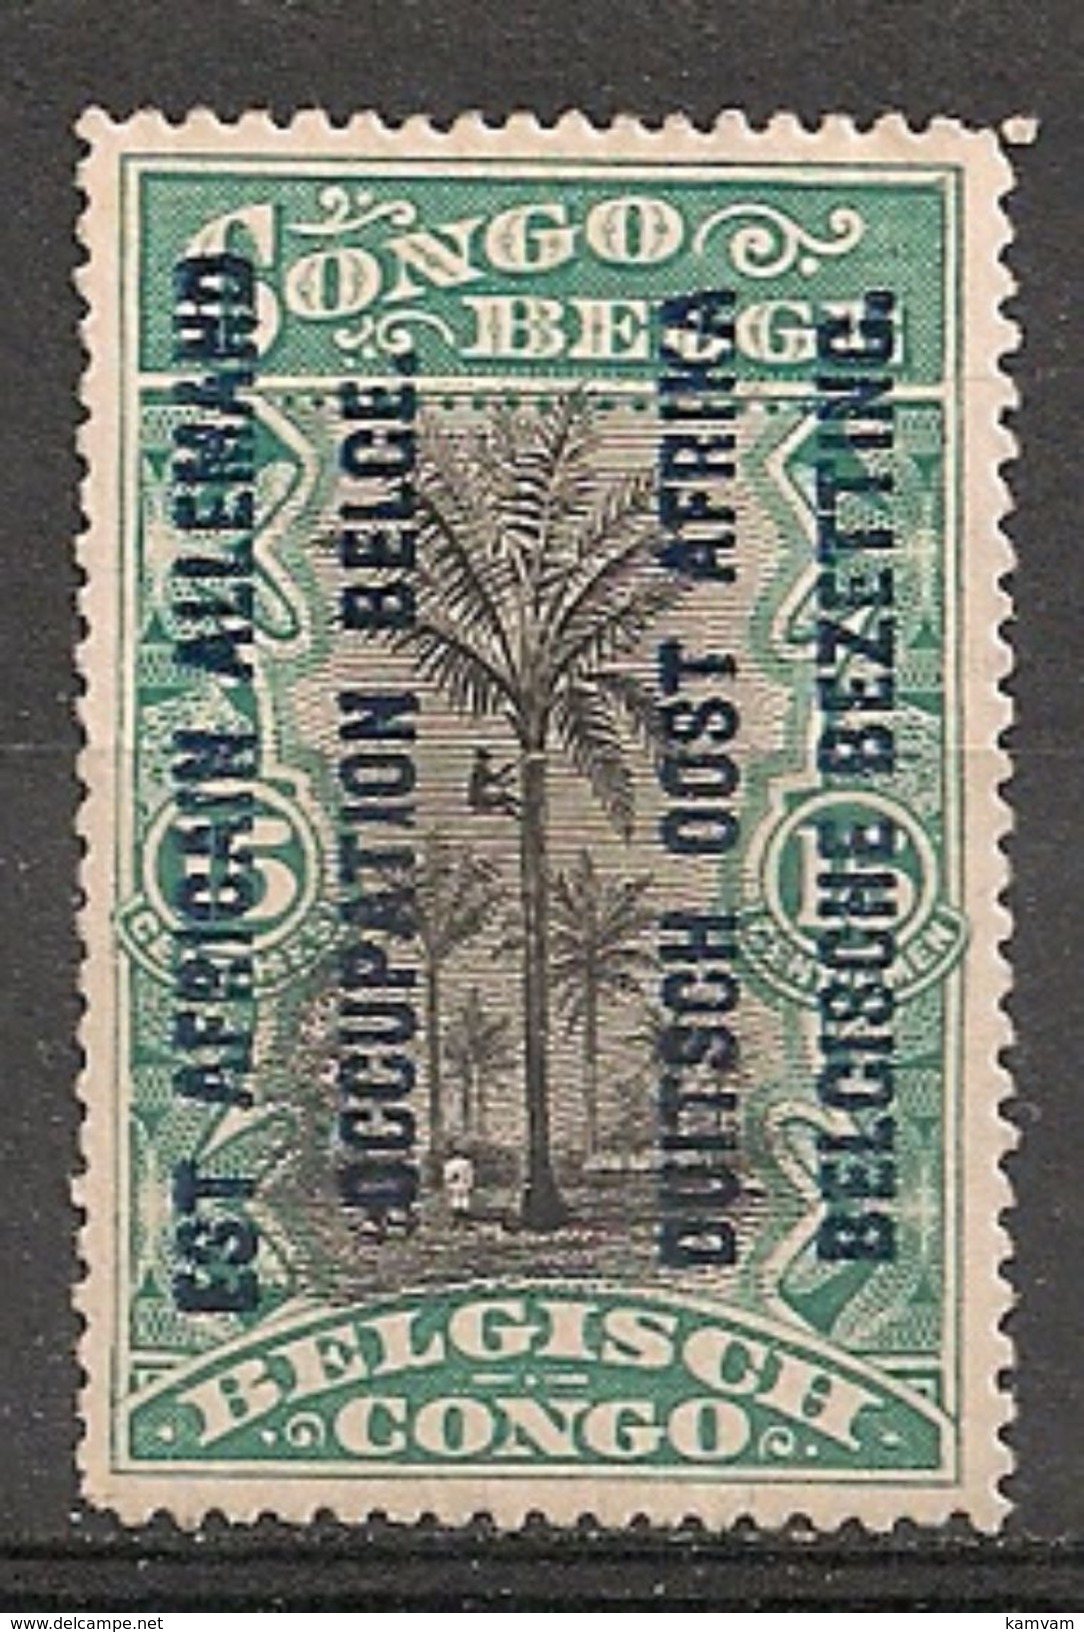 RUANDA URUNDI 30 T14 No Gum - Unused Stamps